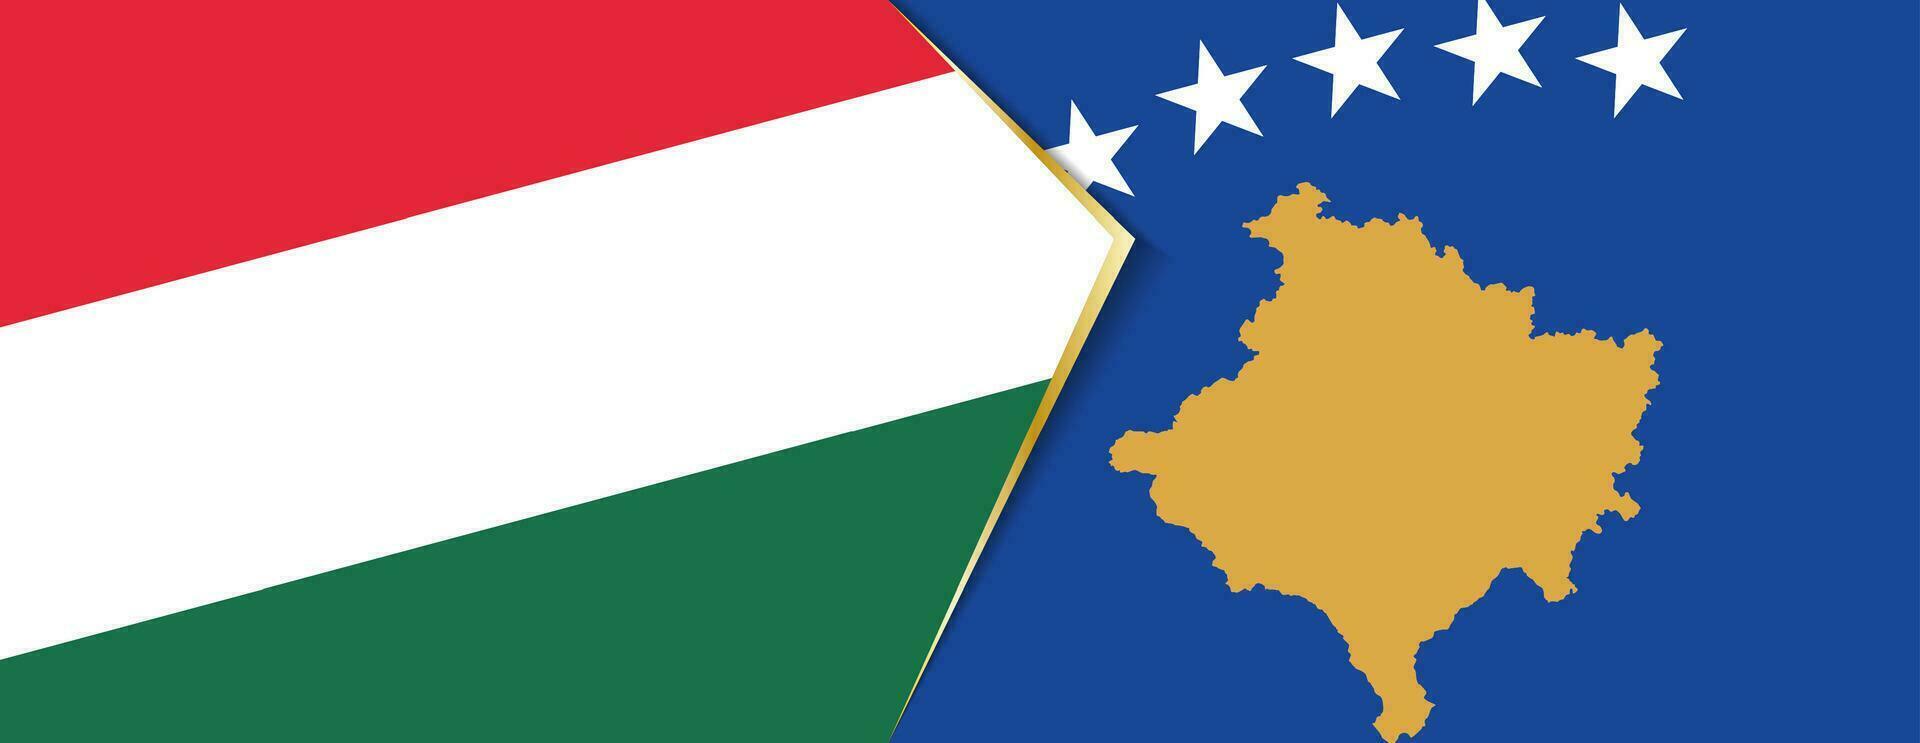 Hungría y Kosovo banderas, dos vector banderas